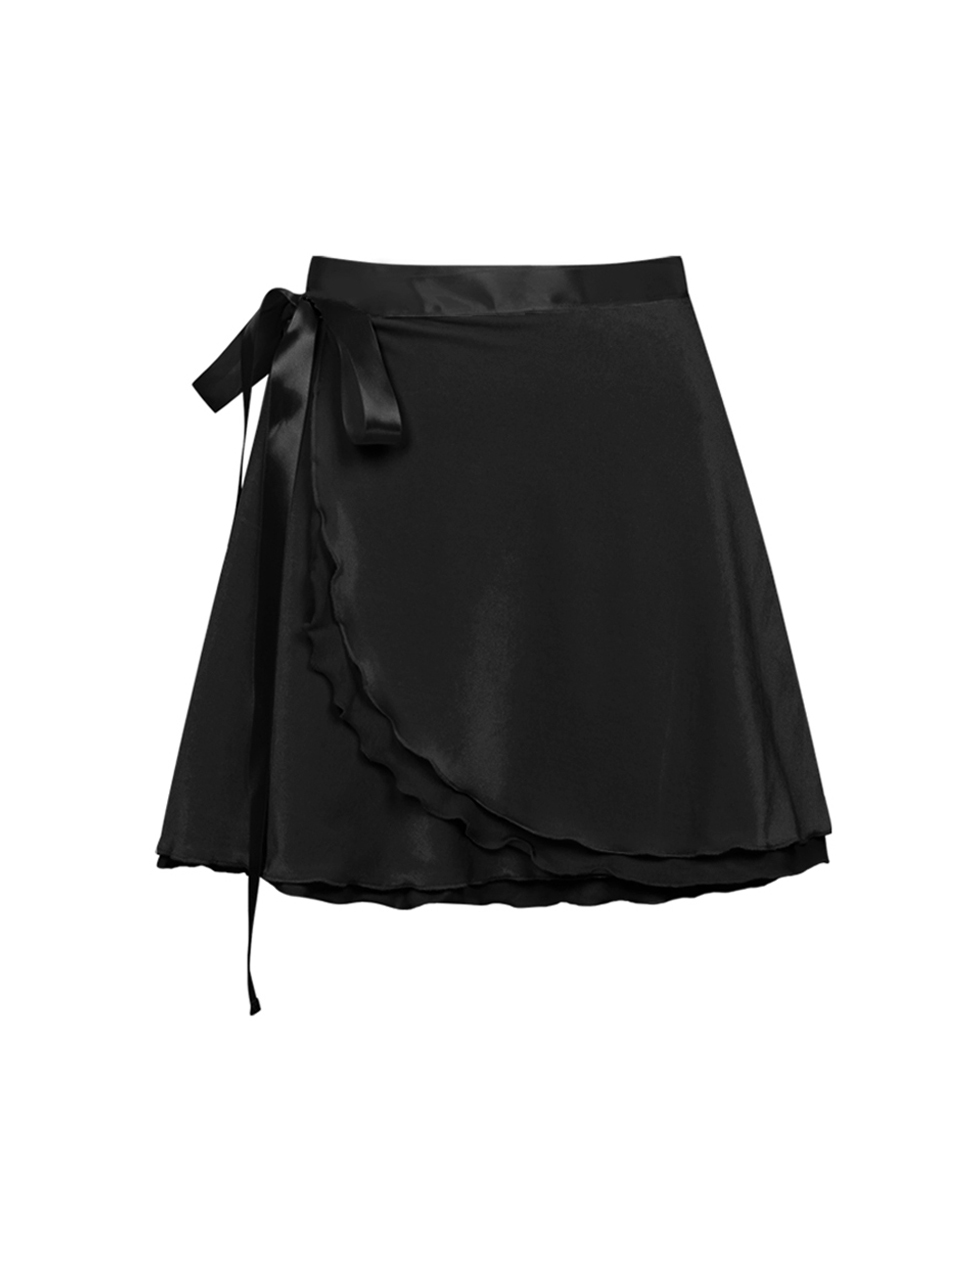 velvet rap skirt - black